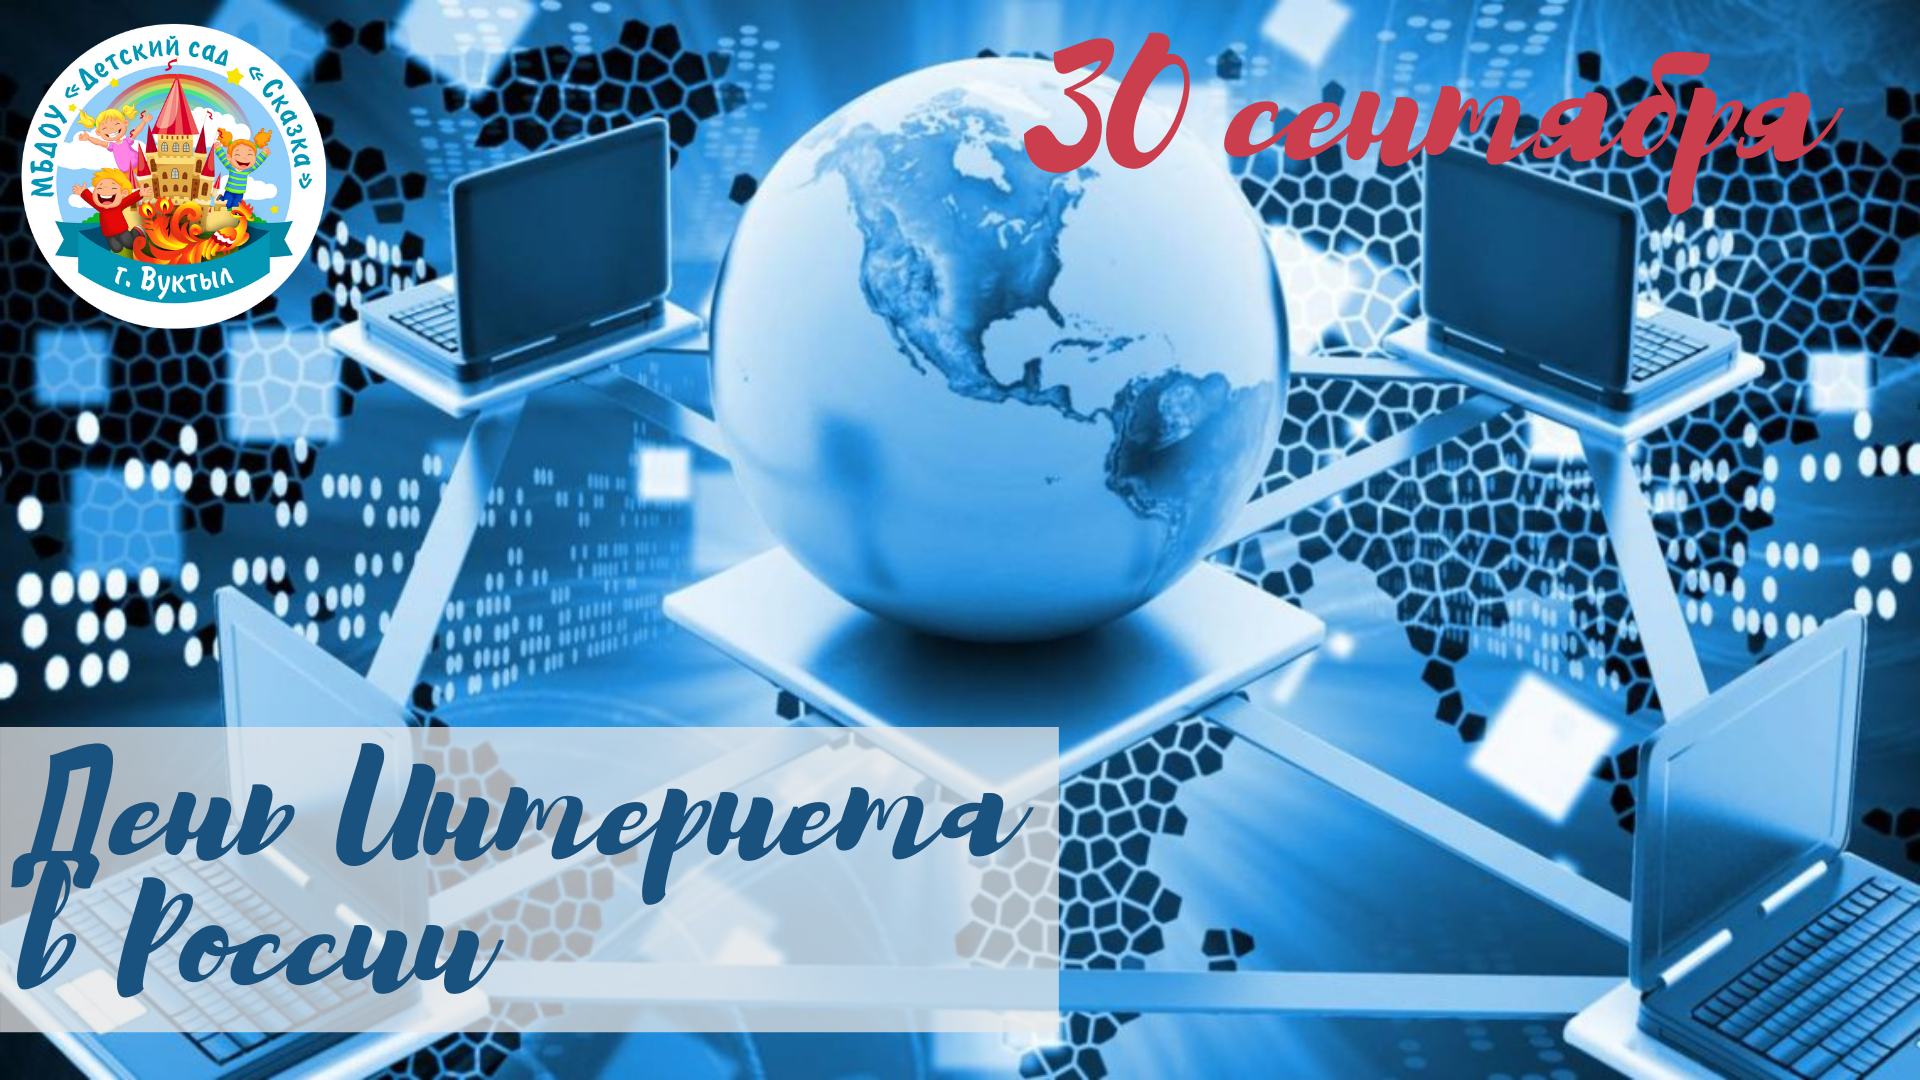 День интернета в России. Поздравление с днем интернета. Всемирный день интернета. 30 Сентября день интернета. Хороший интернет рф